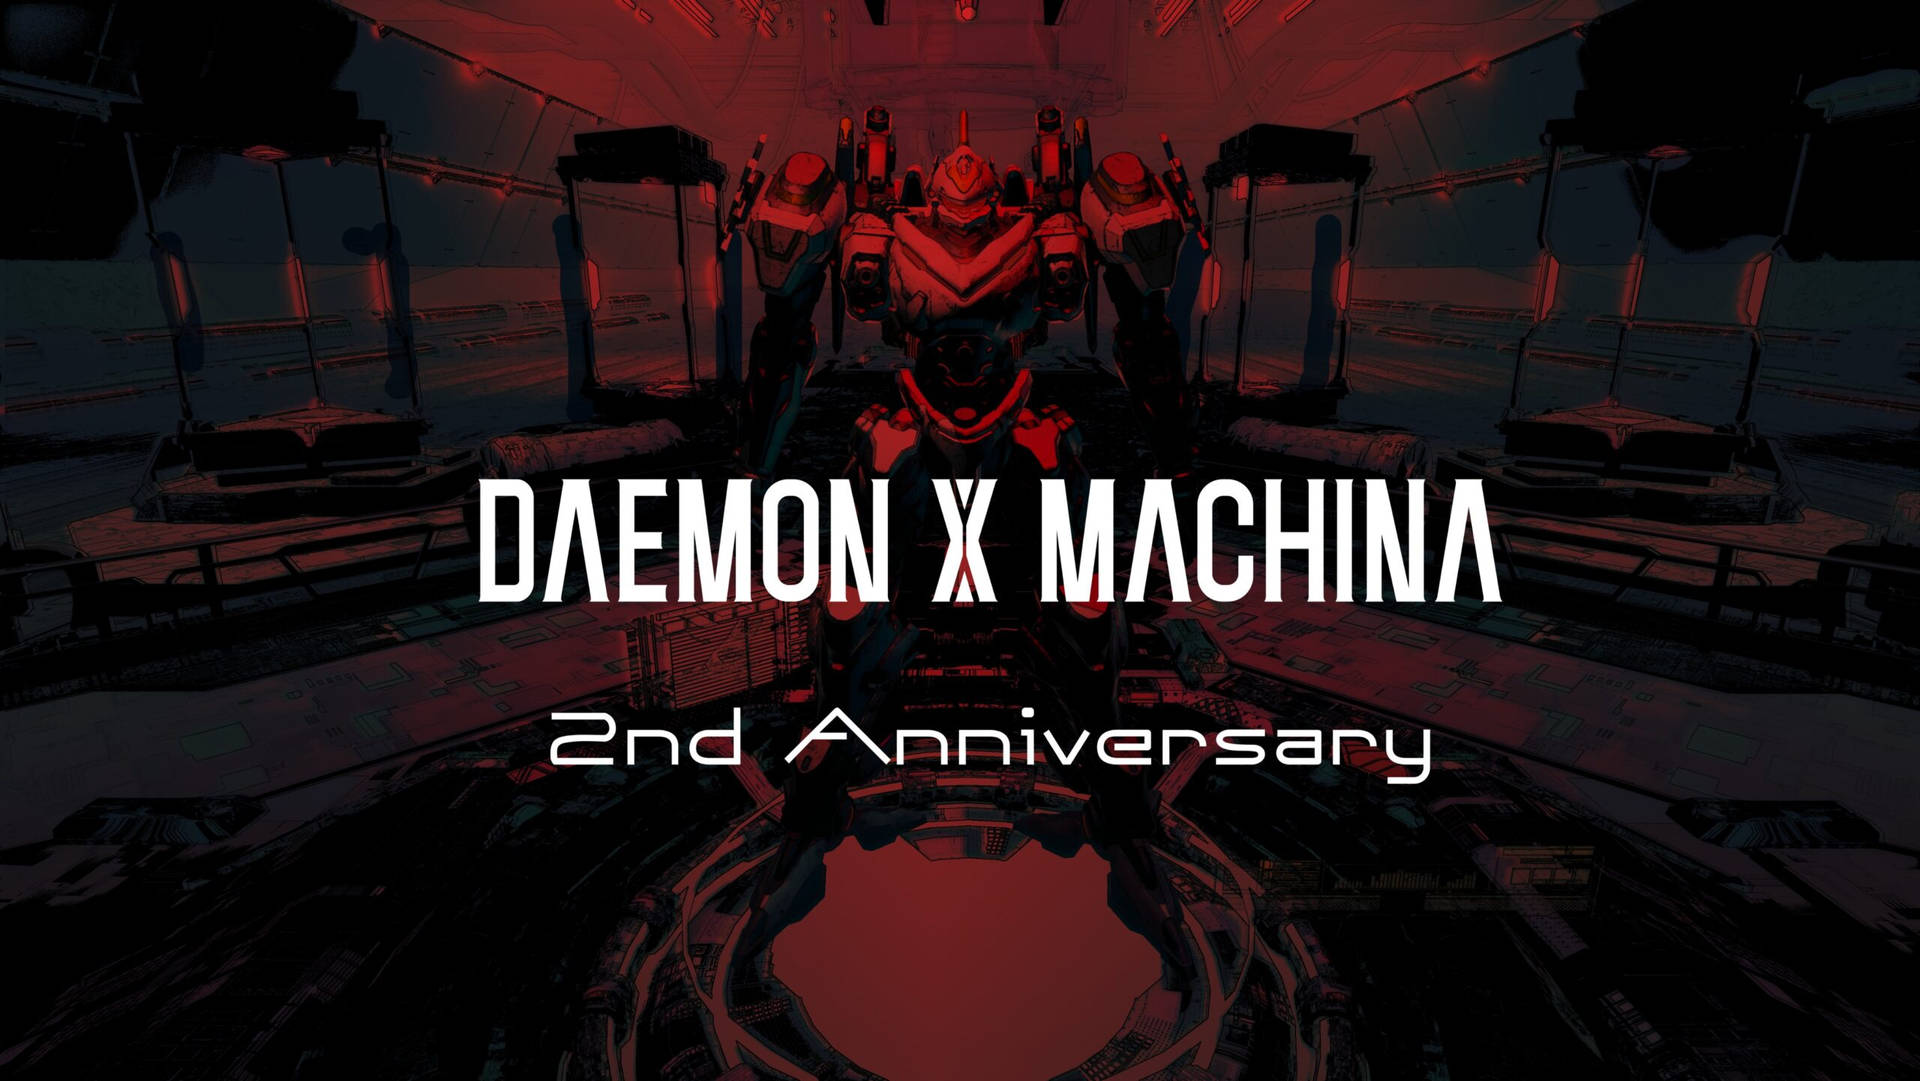 Daemonx Machina 2do Aniversario Fondo de pantalla